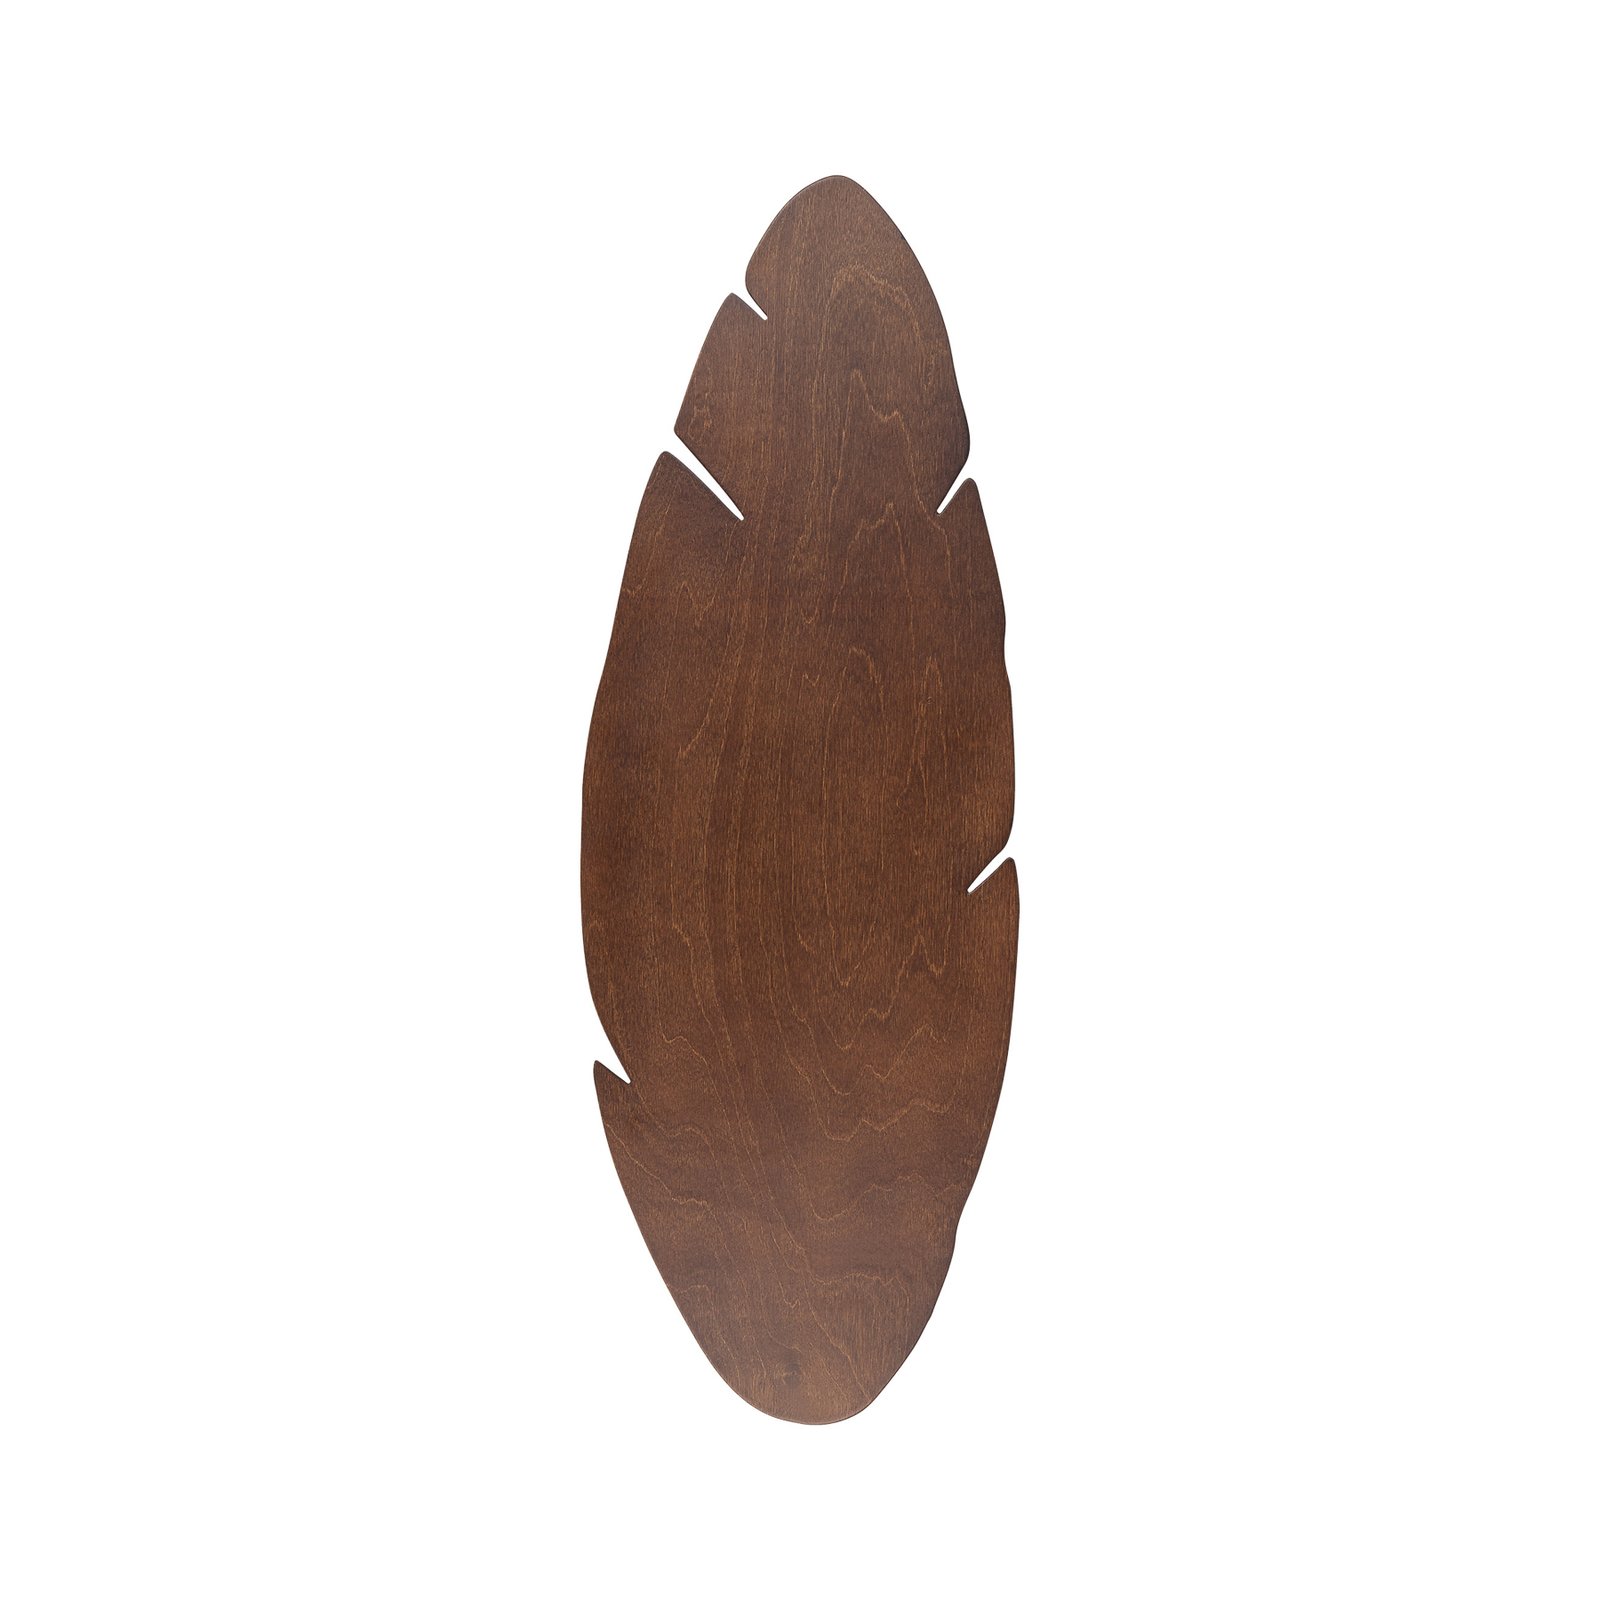 Nástěnné svítidlo Envostar Lehti, tvar listu, ořech, 69 x 24 cm